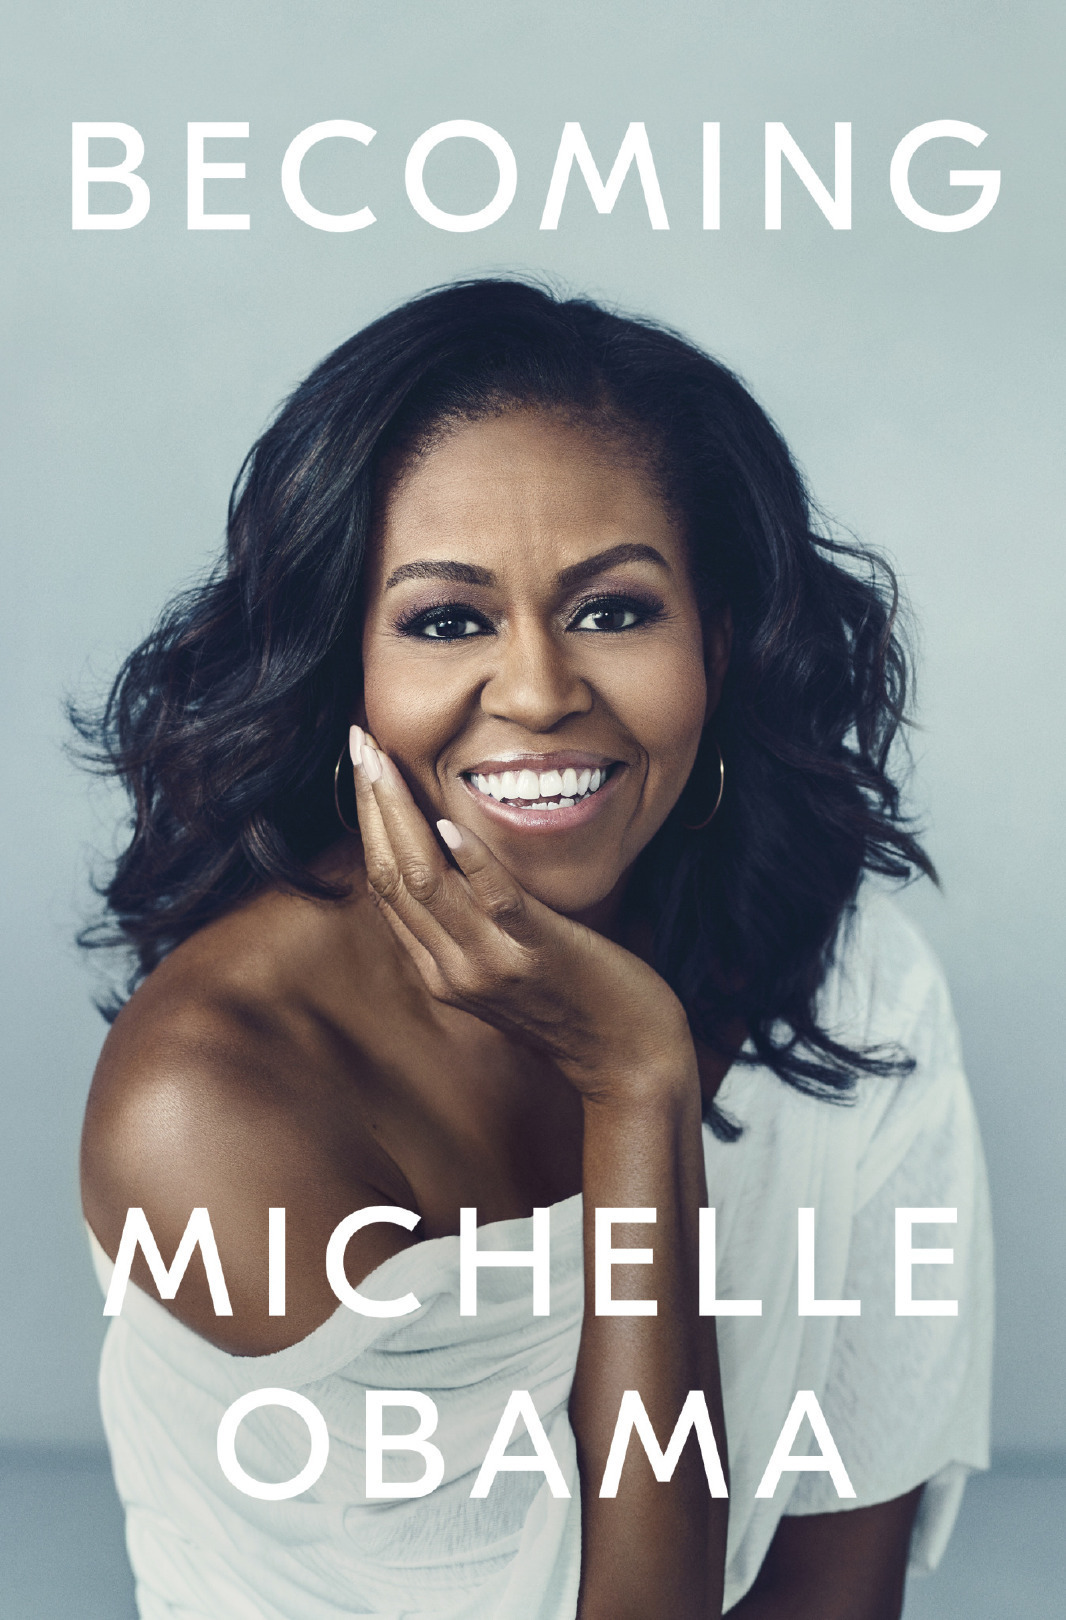 Michelle Obama’nın Kitabı Becoming Rekor Kırıyor!